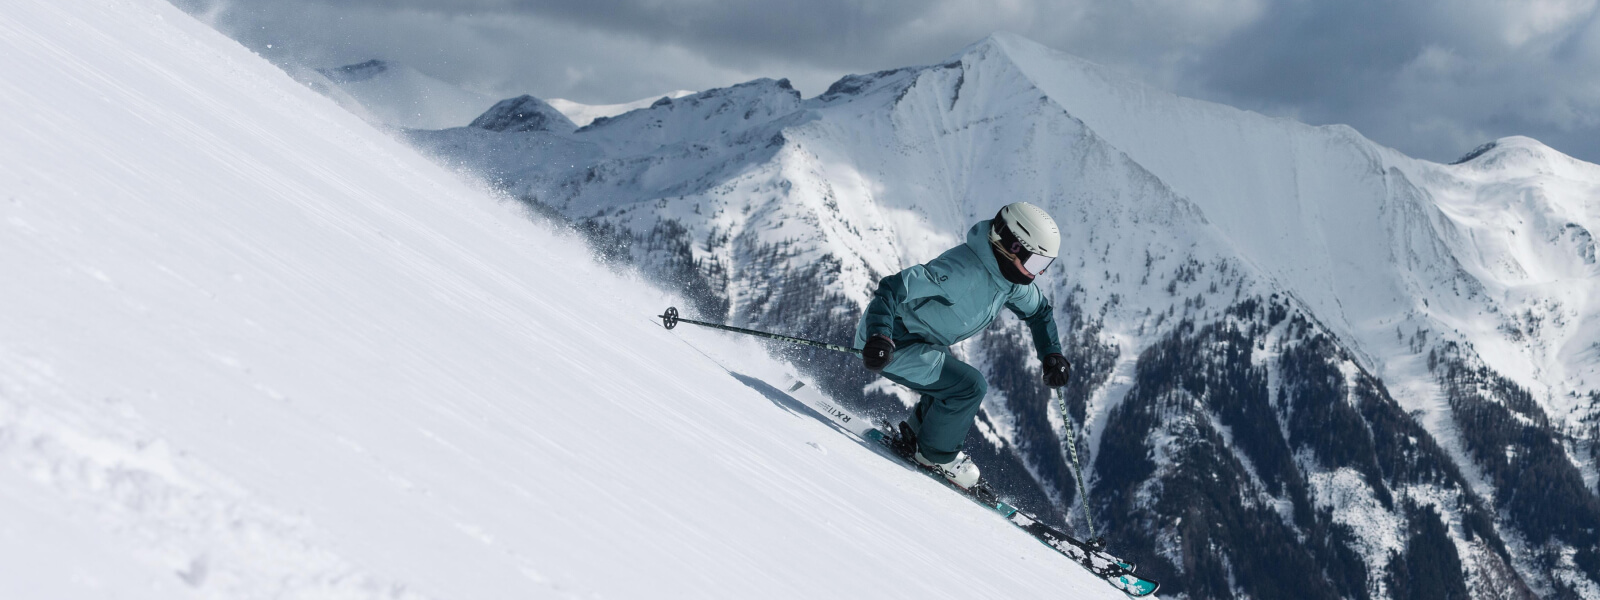 Skifahrer fährt eine Poste herunter, im Hintergrund befinden sich Schneebedeckte Berge